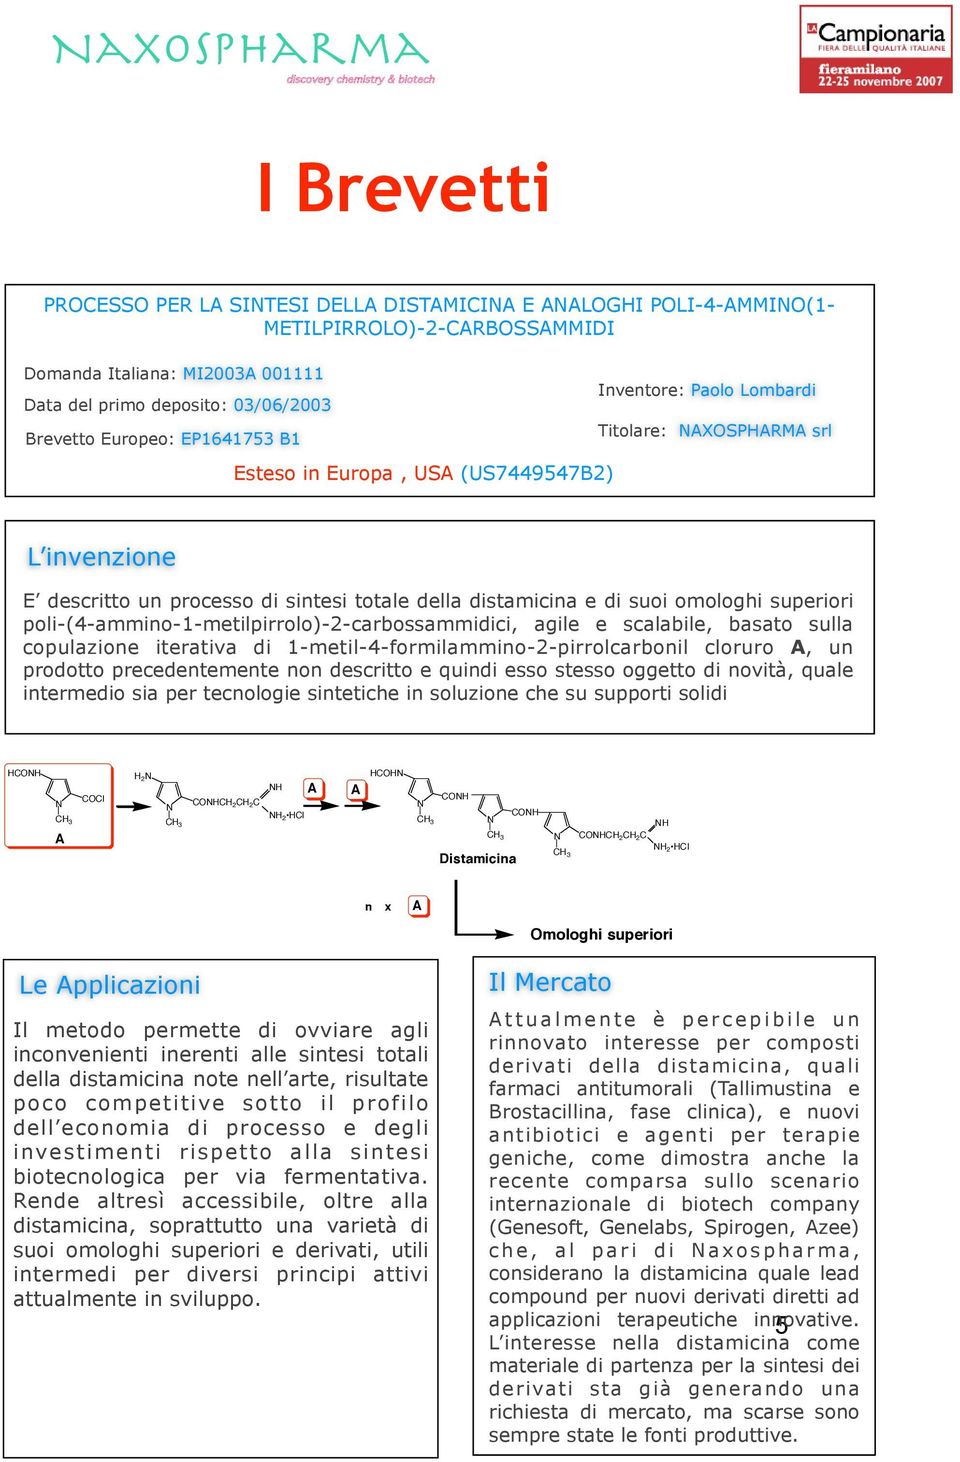 poli-(4-ammino-1-metilpirrolo)-2-carbossammidici, agile e scalabile, basato sulla copulazione iterativa di 1-metil-4-formilammino-2-pirrolcarbonil cloruro, un prodotto precedentemente non descritto e